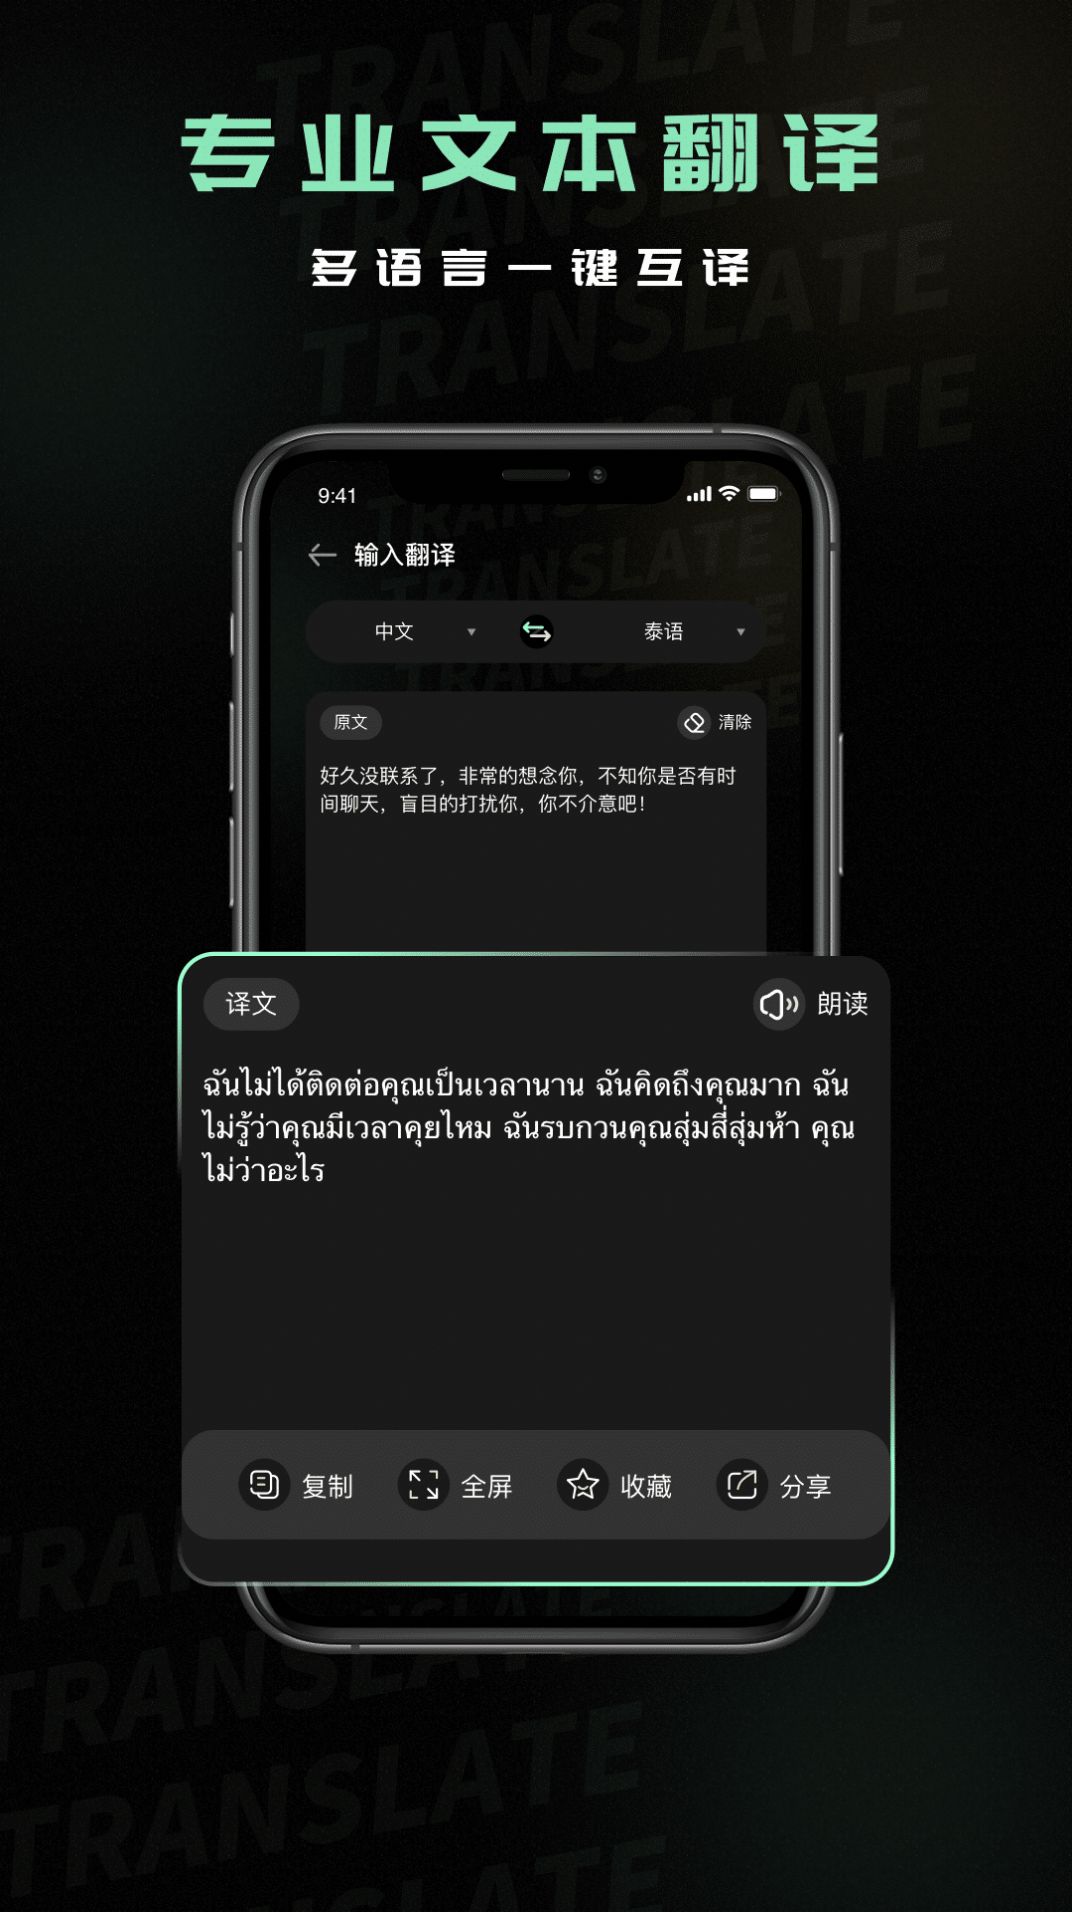 泰语翻译器拍照识别软件